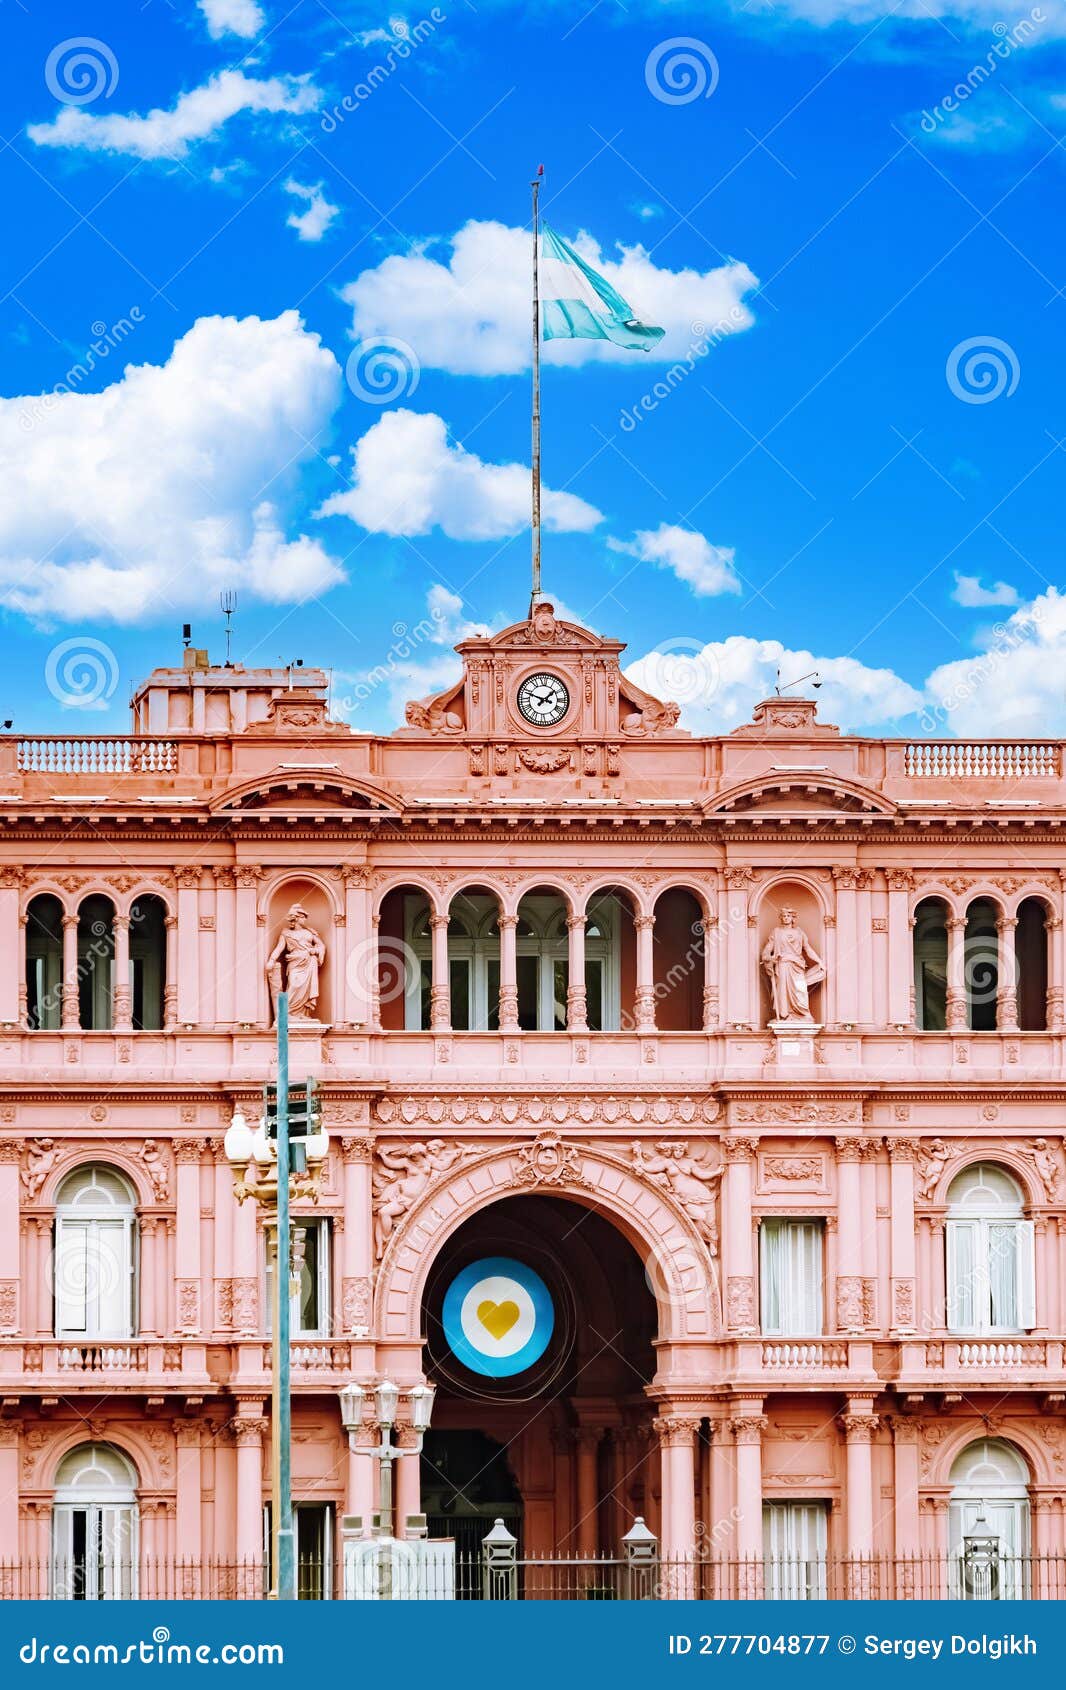 the pink house casa rosada also known as government house casa de gobierno. vertical